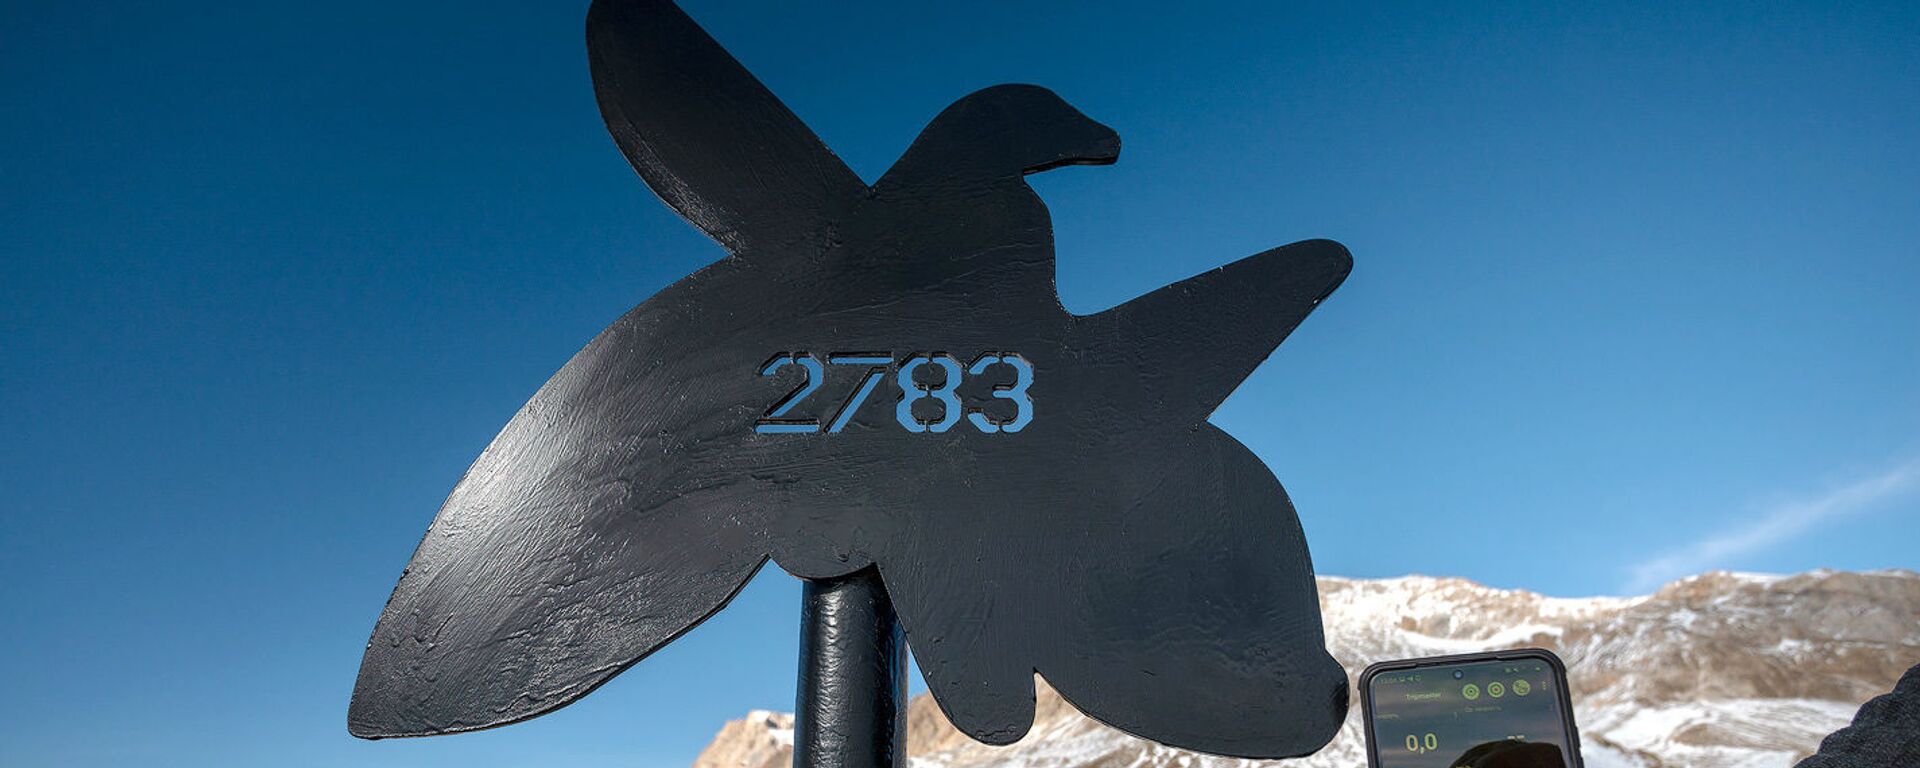 Азербайджанские альпинисты в массиве Гызылгая на высоте 2783 метров установили стелу в память 2783 шехидов - Sputnik Азербайджан, 1920, 15.12.2020